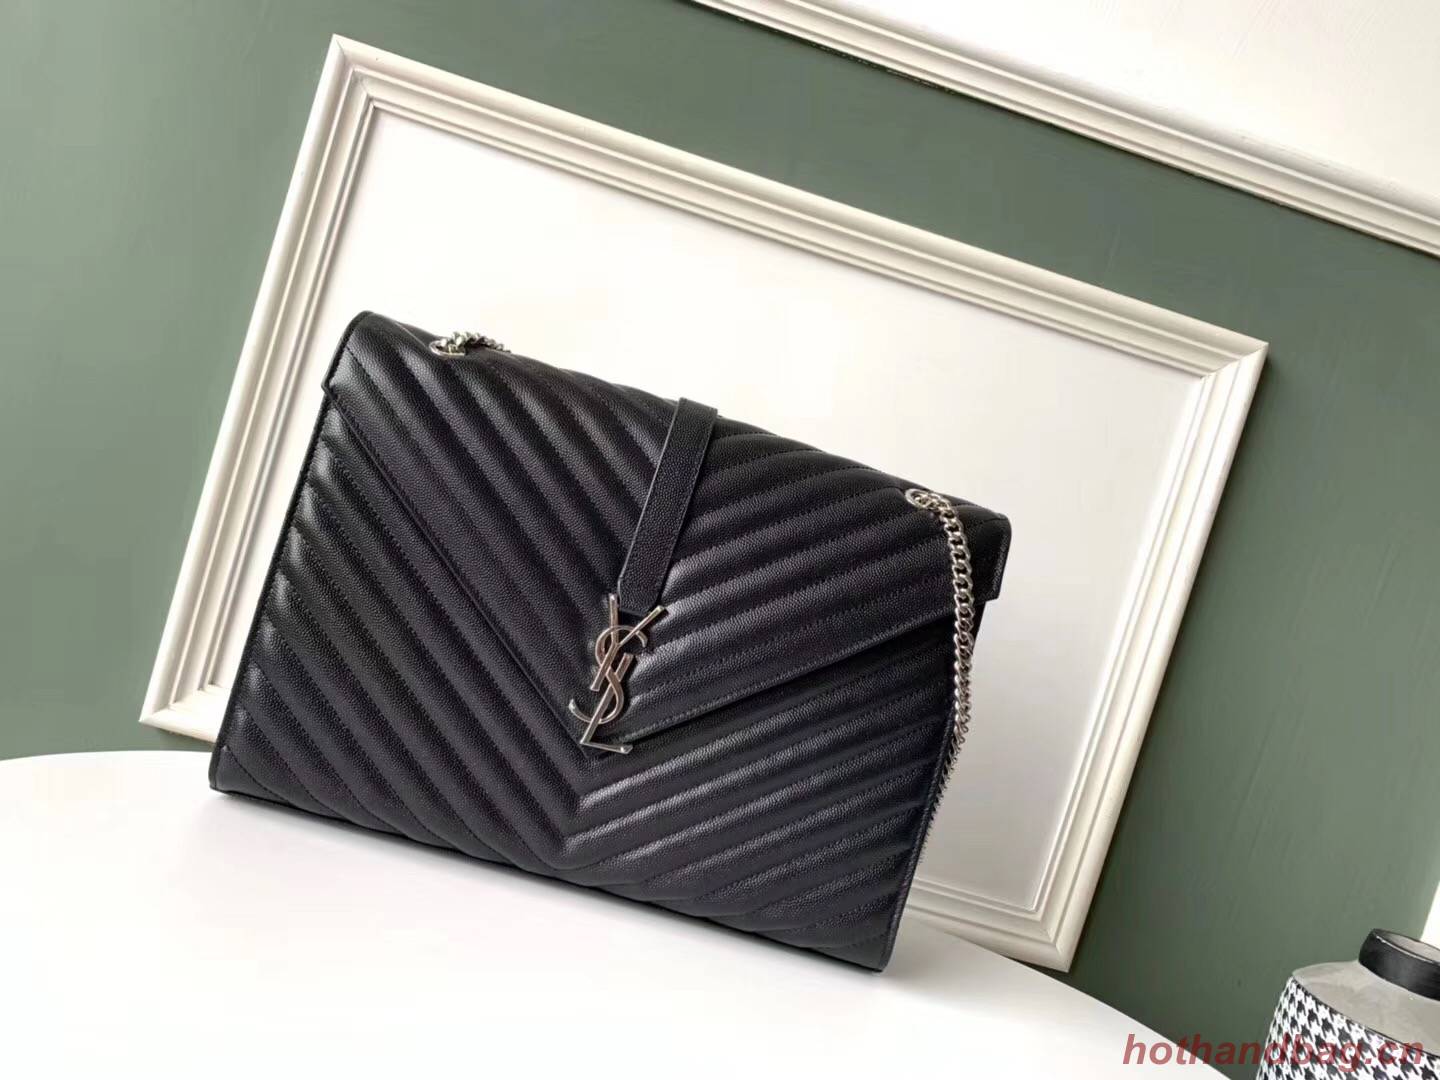 SAINT LAURENT leather shoulder bag 392745 black&silver-toned hardware